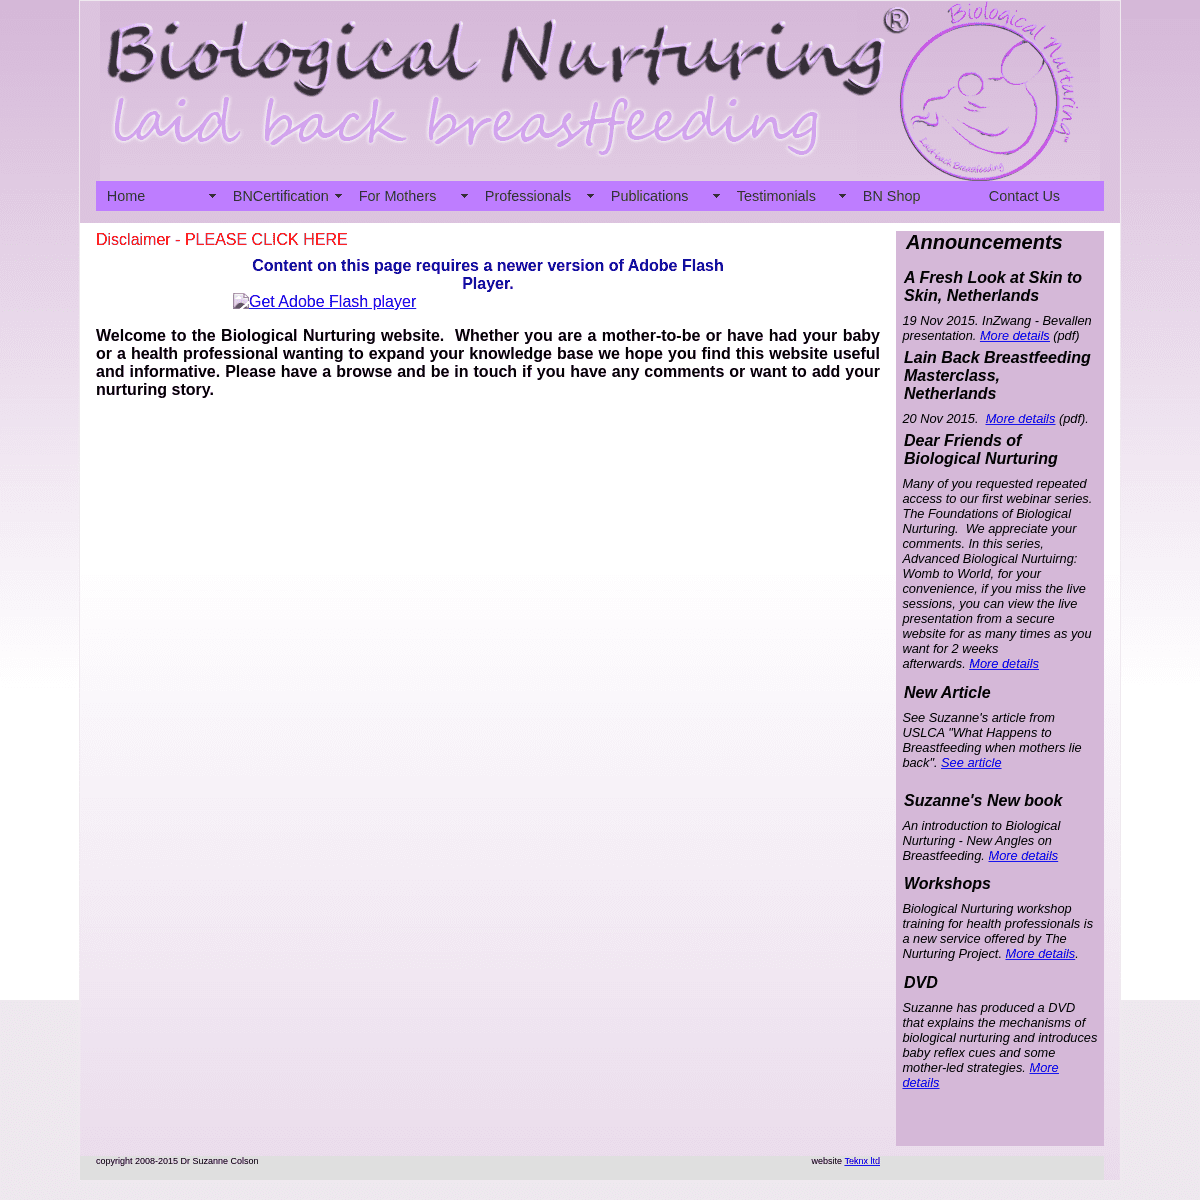 A complete backup of https://biologicalnurturing.com